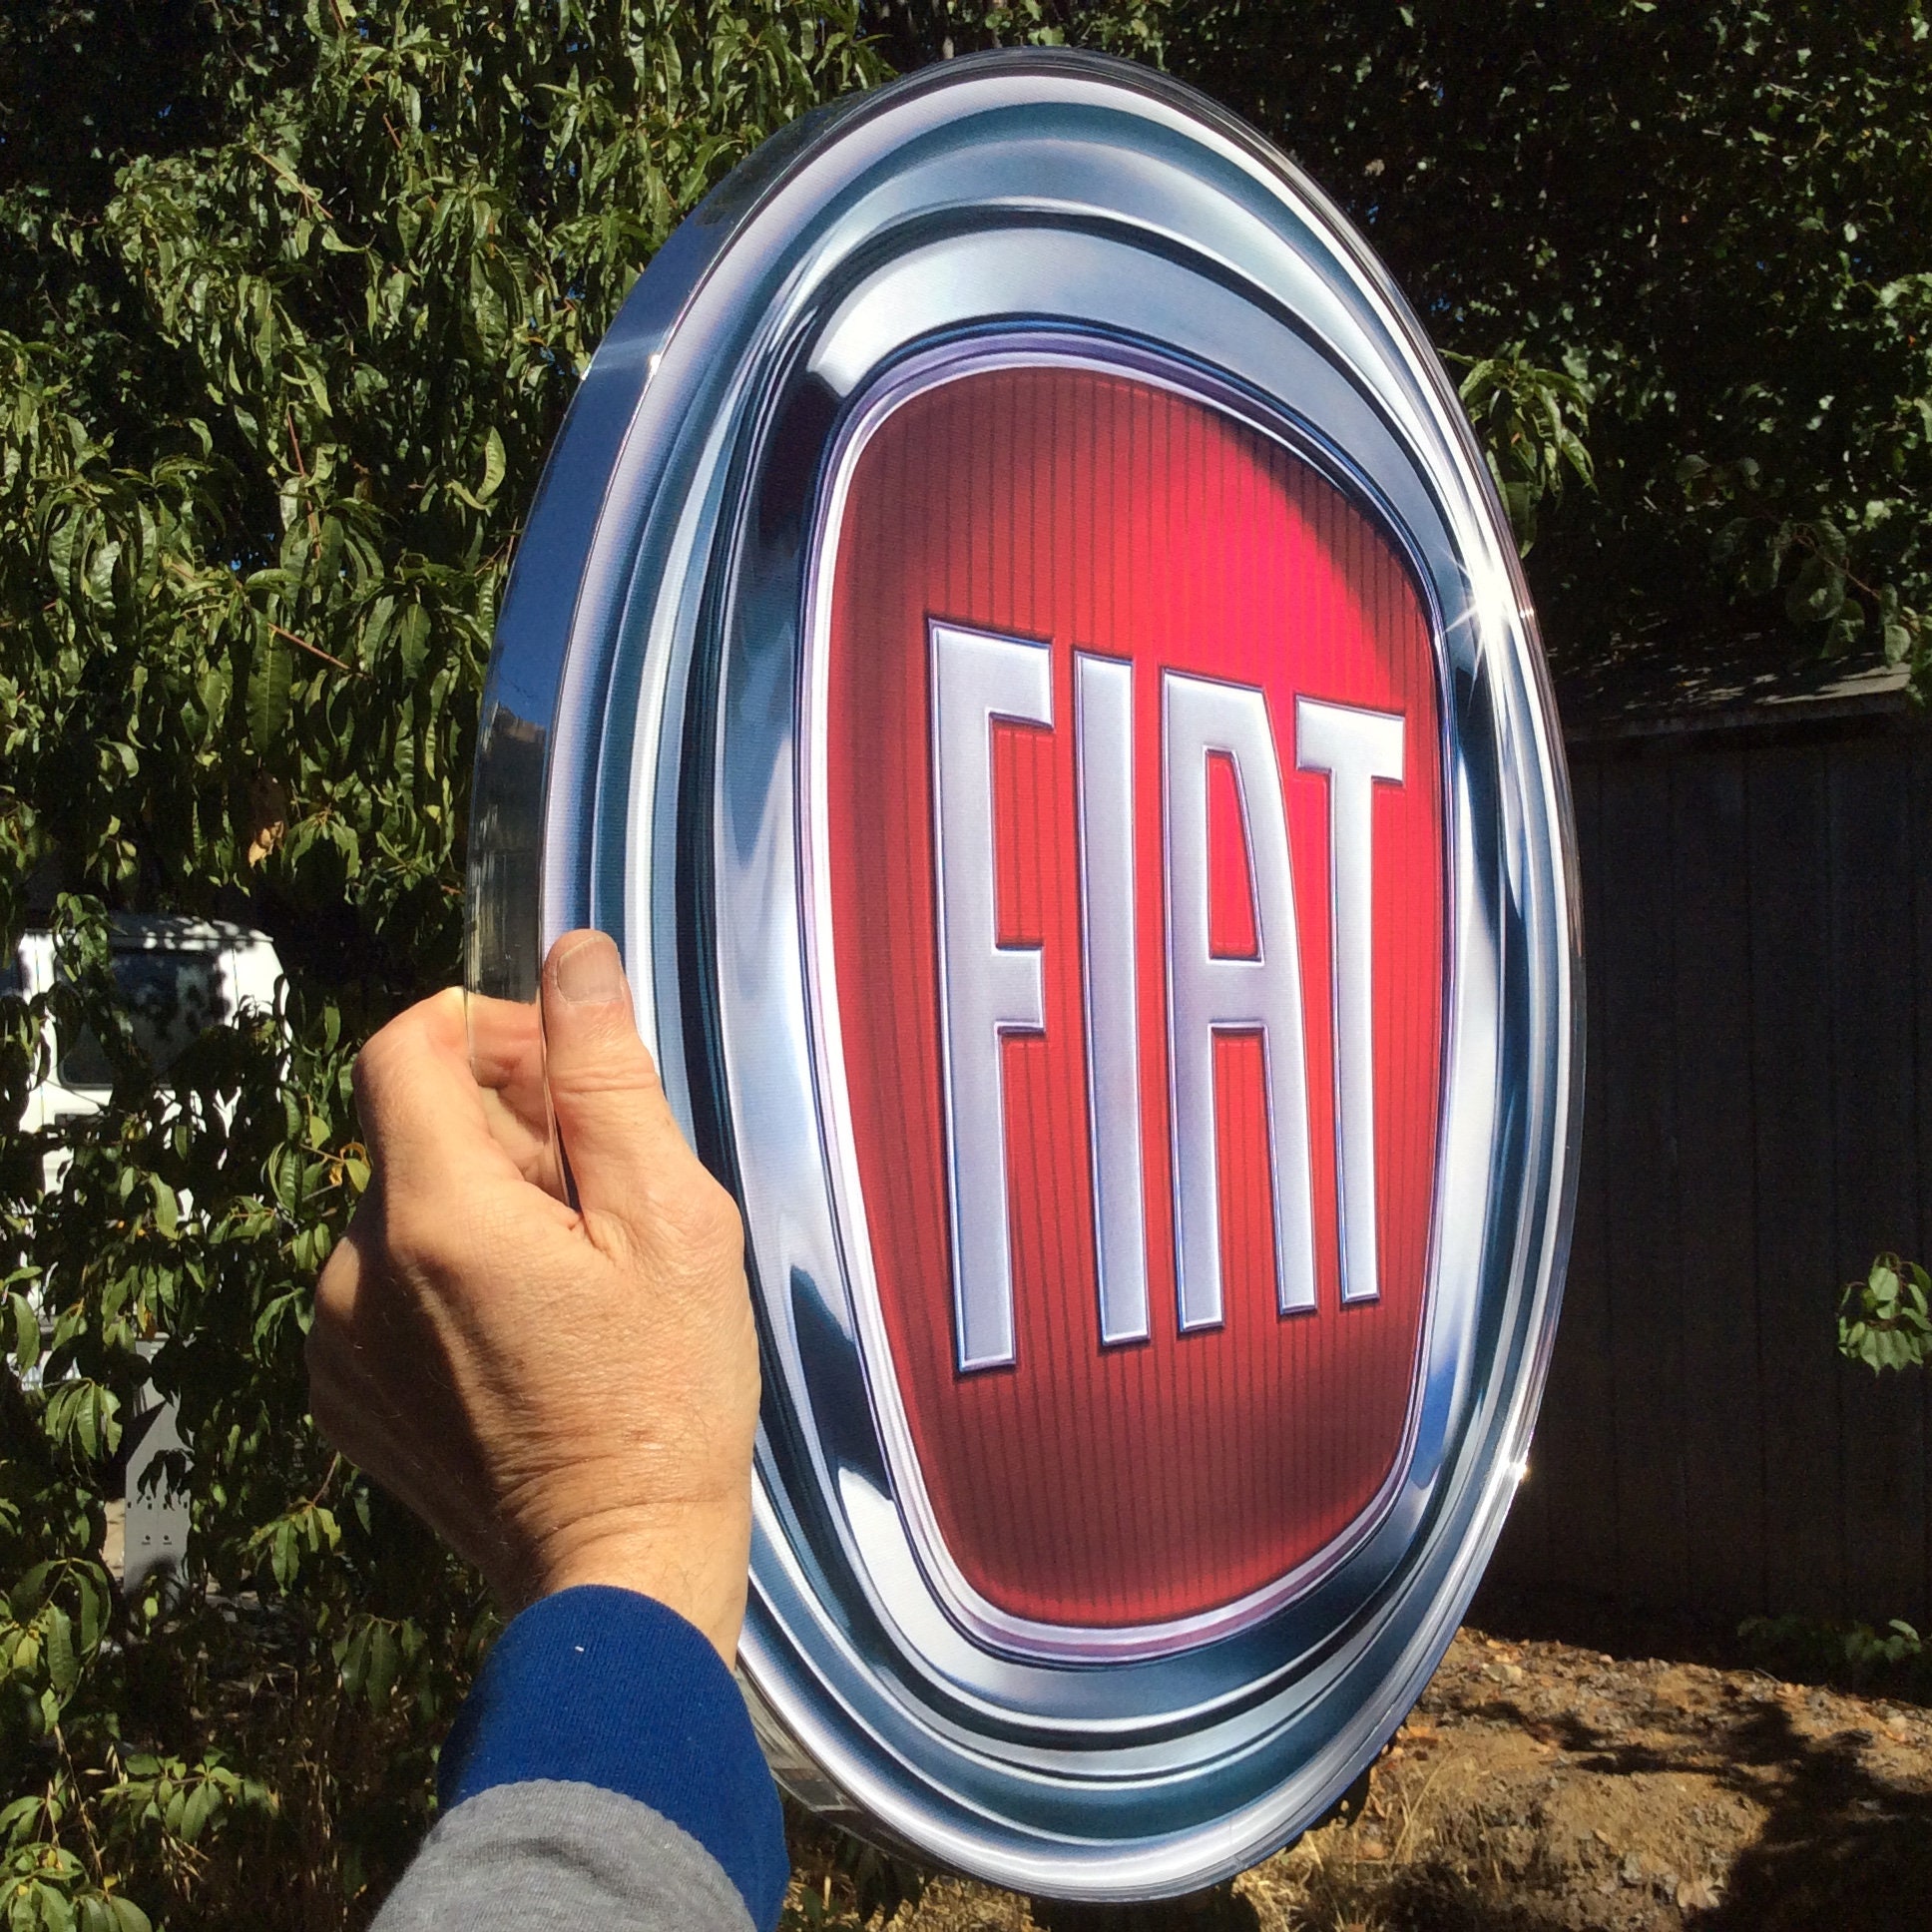 Plaque émaillée Fiat logo rond